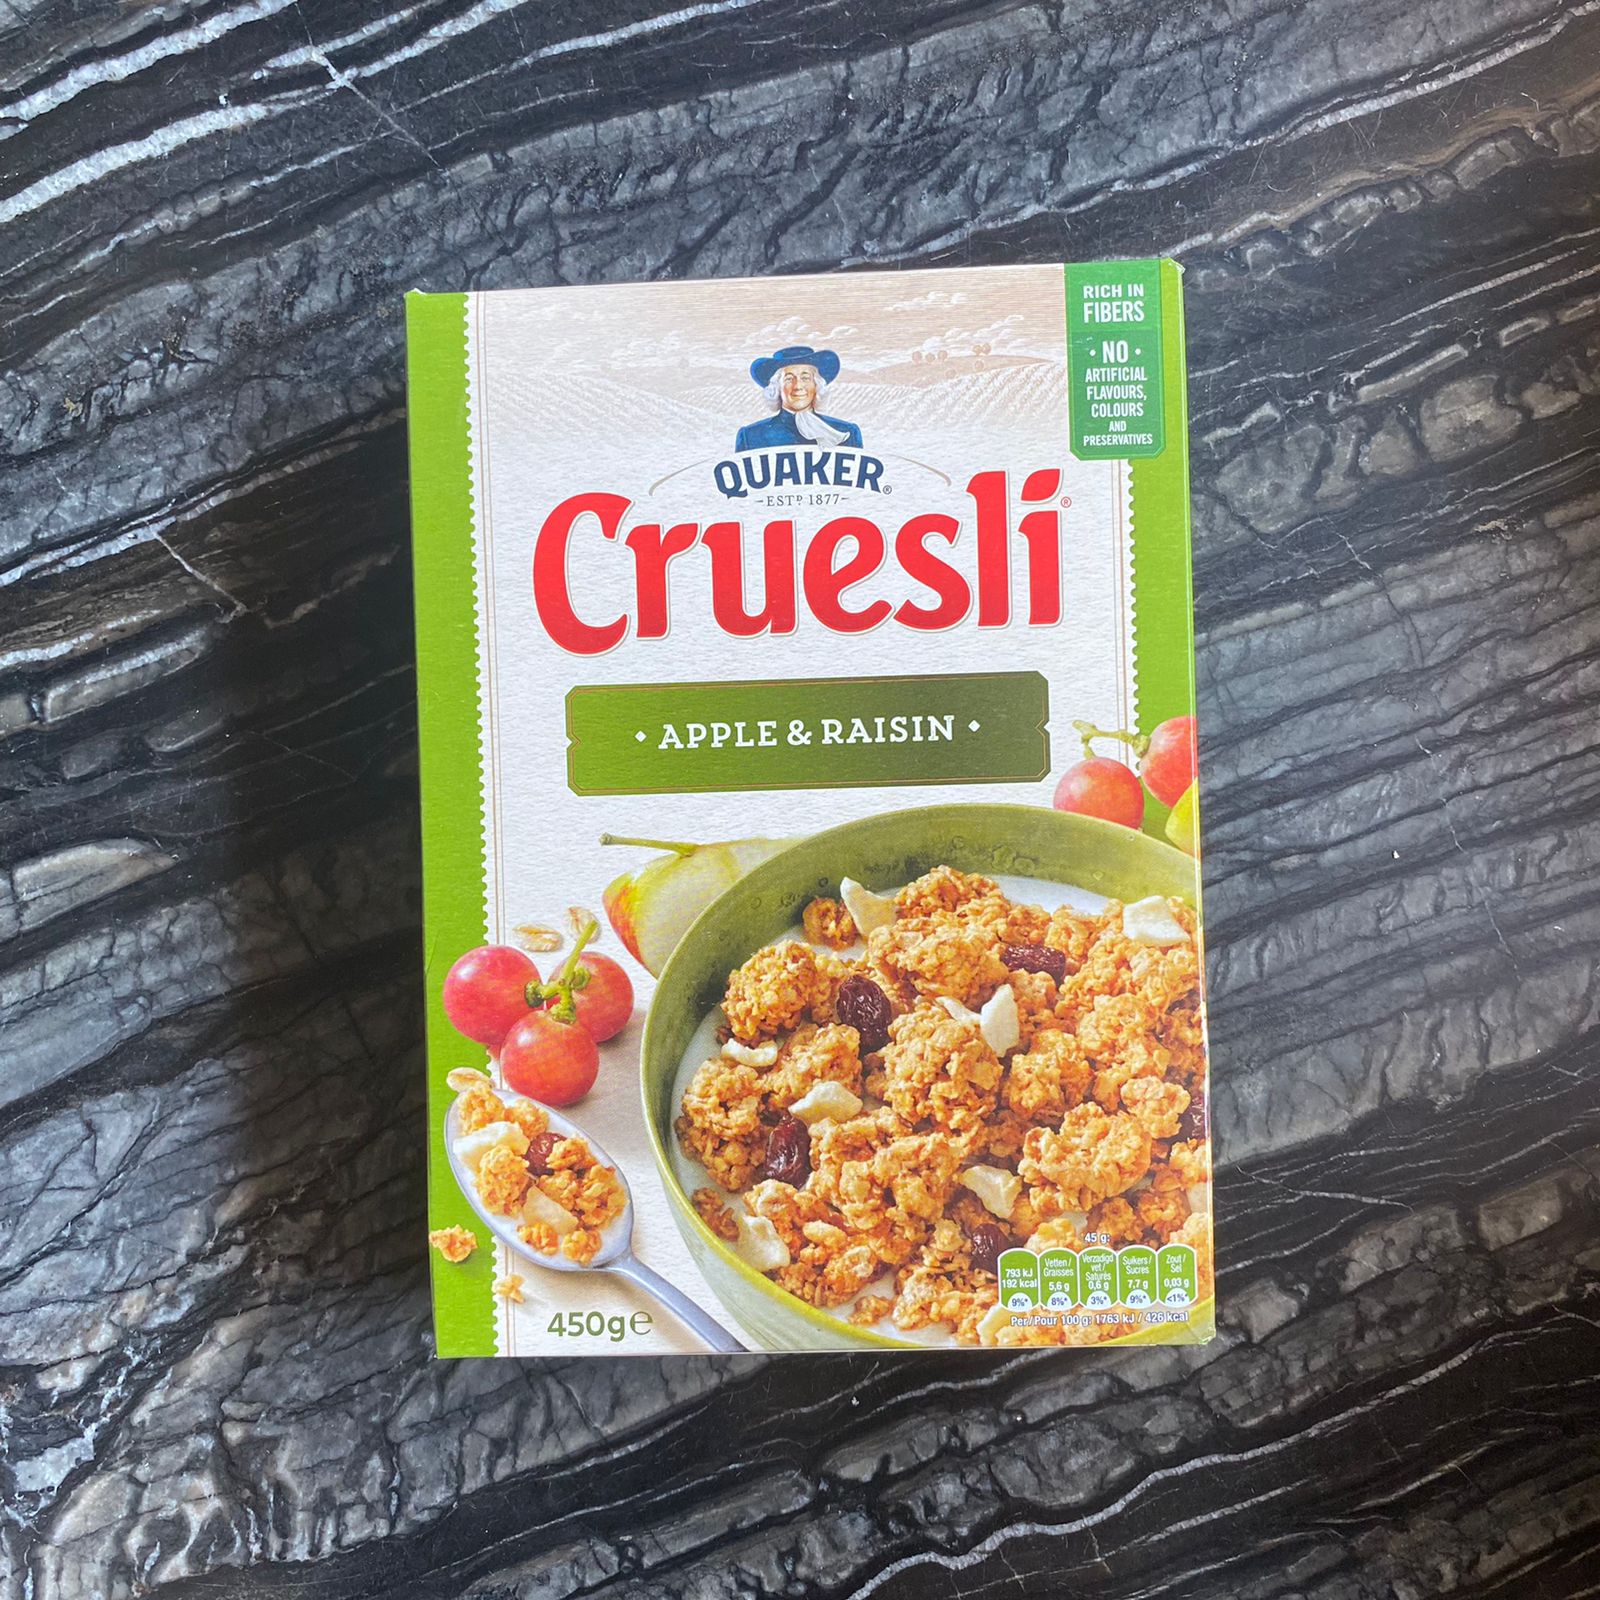 Quaker Cruesli - Chocolate – Dutch Groceries